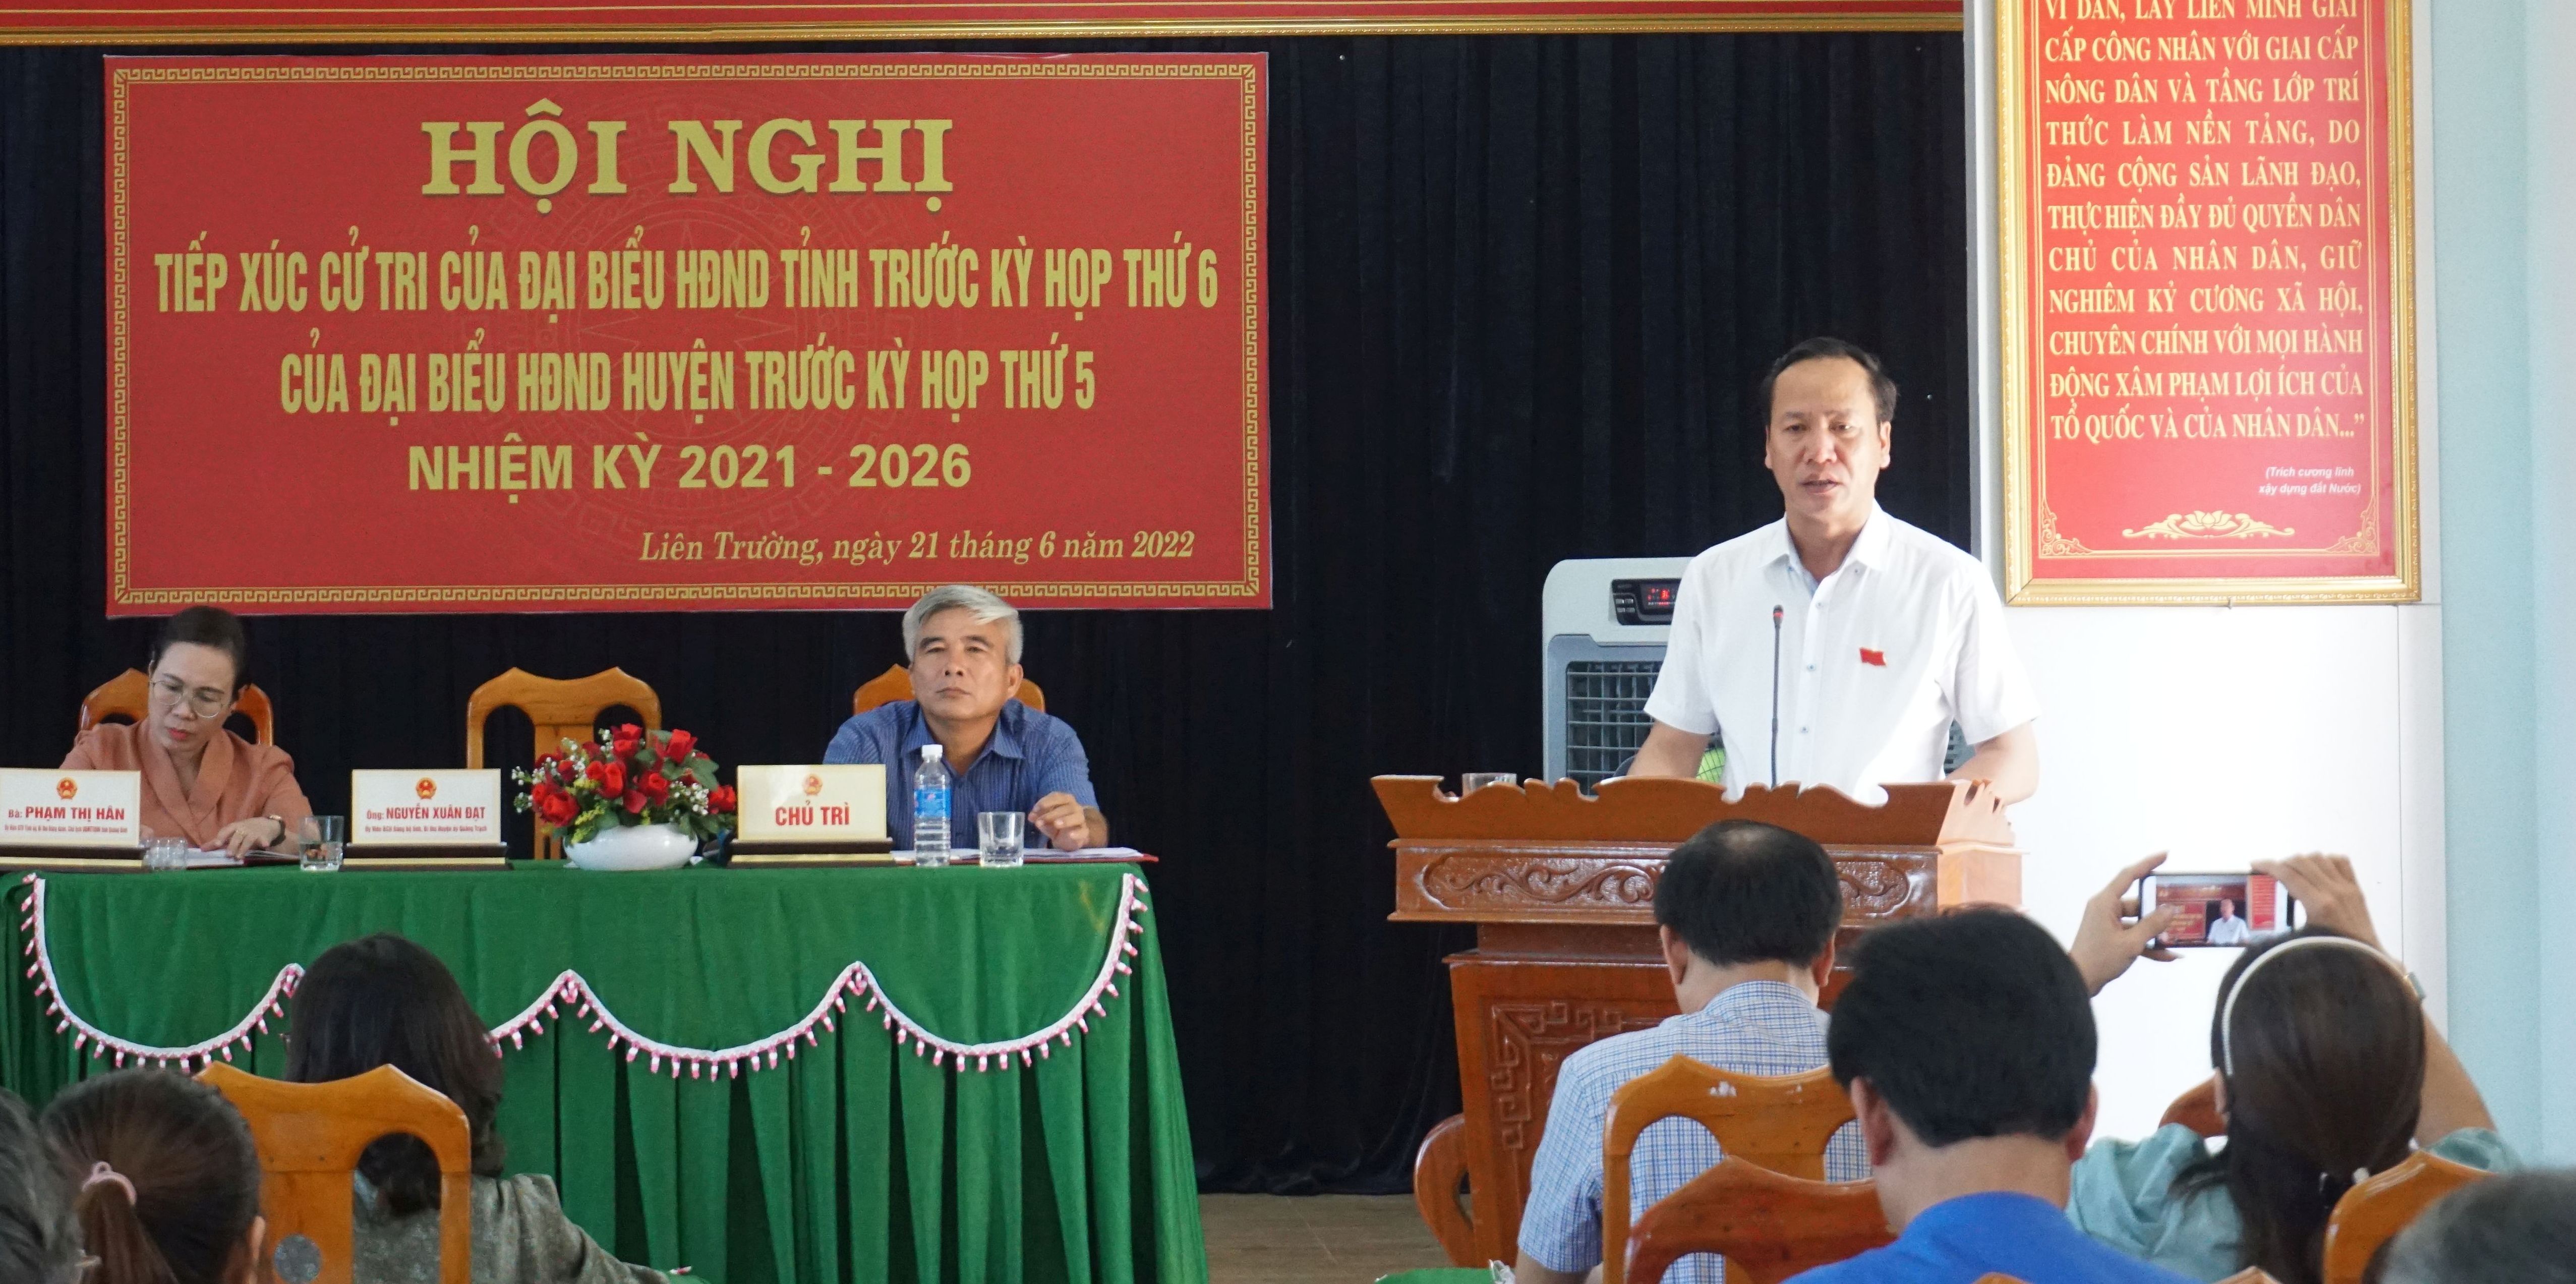 : Đại biểu Nguyễn Xuân Đạt, Tỉnh ủy viên, Bí thư Huyện ủy Quảng Trạch trả lời, giải trình một số kiến nghị của cử tri. 